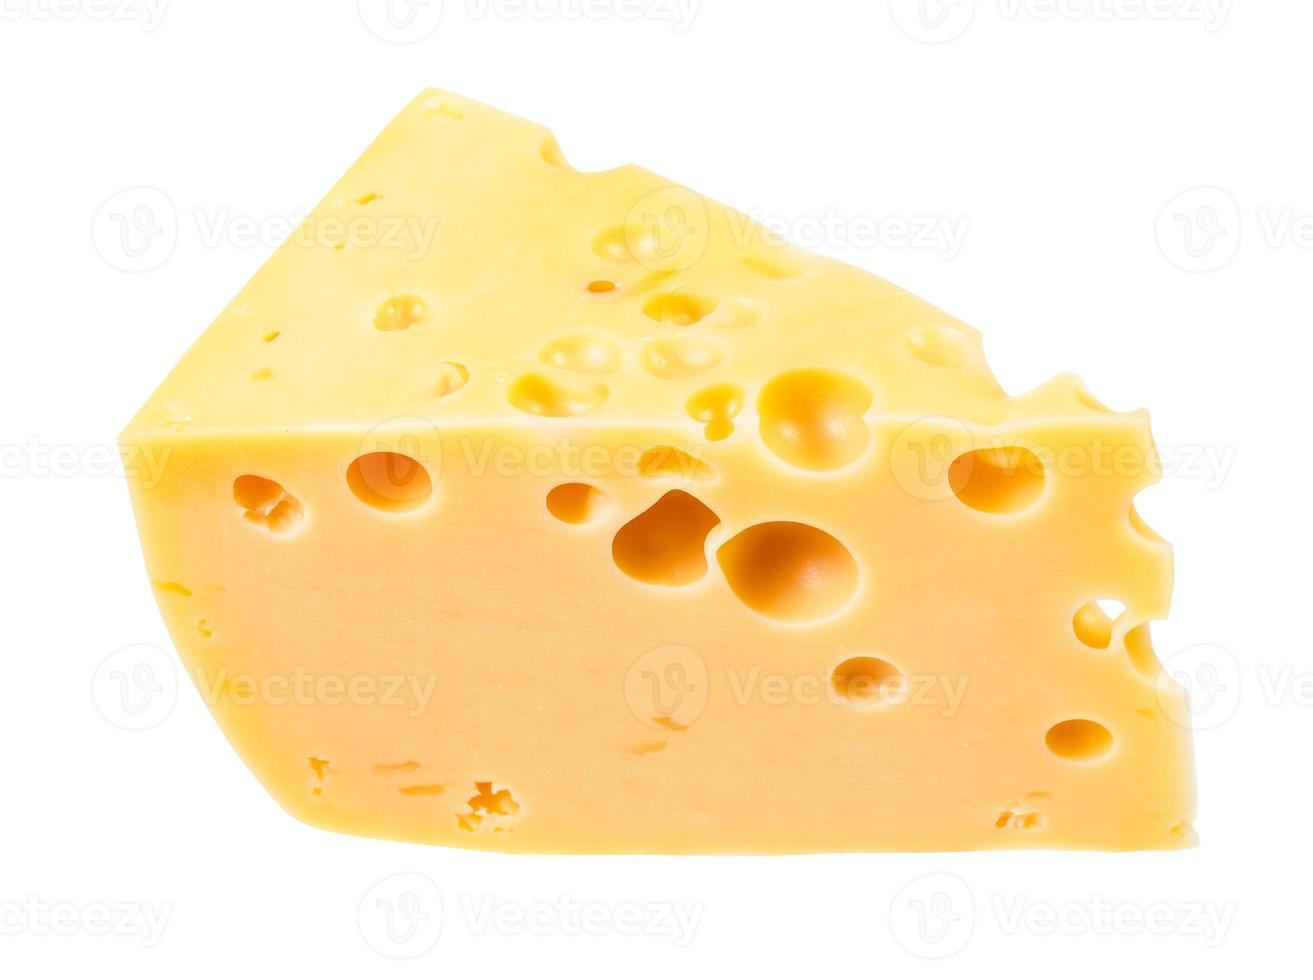 trozo de queso suizo semiduro amarillo aislado foto